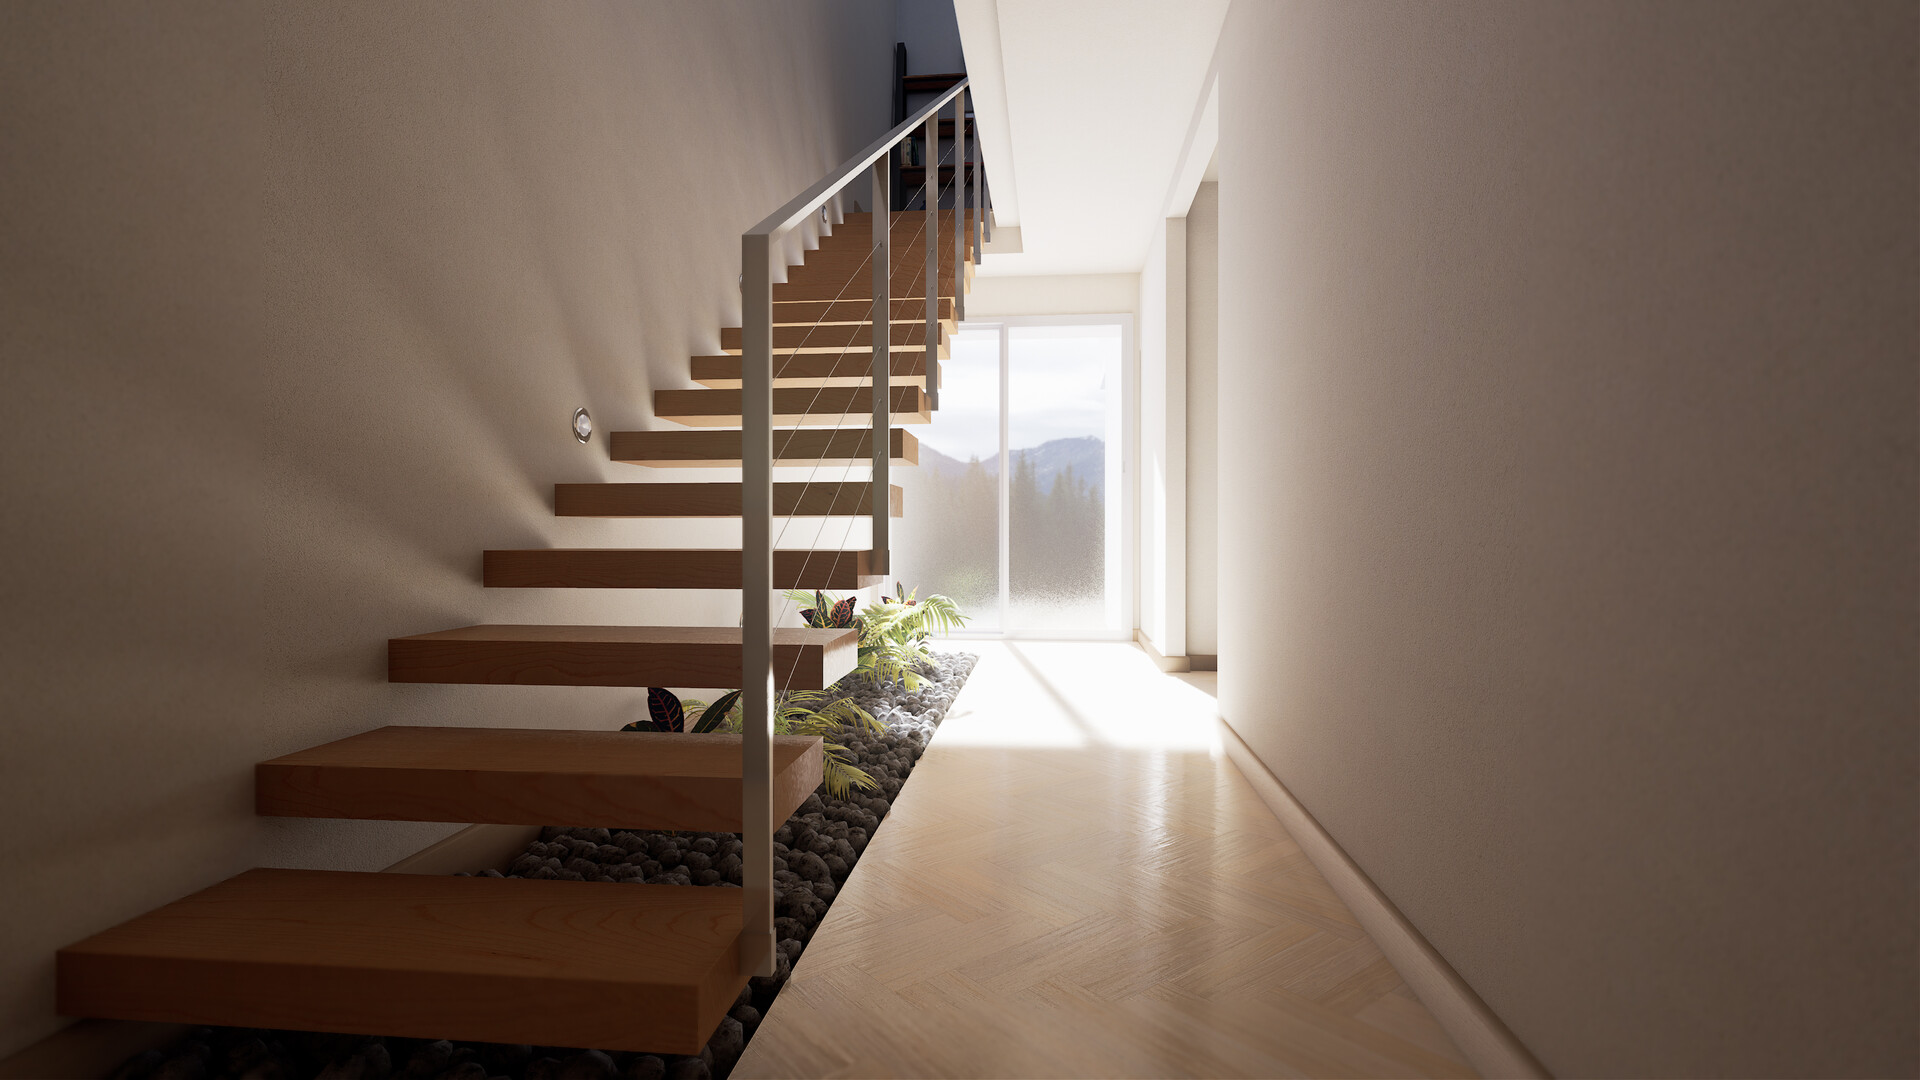 ArtStation - Nordic-Industrial apartment design